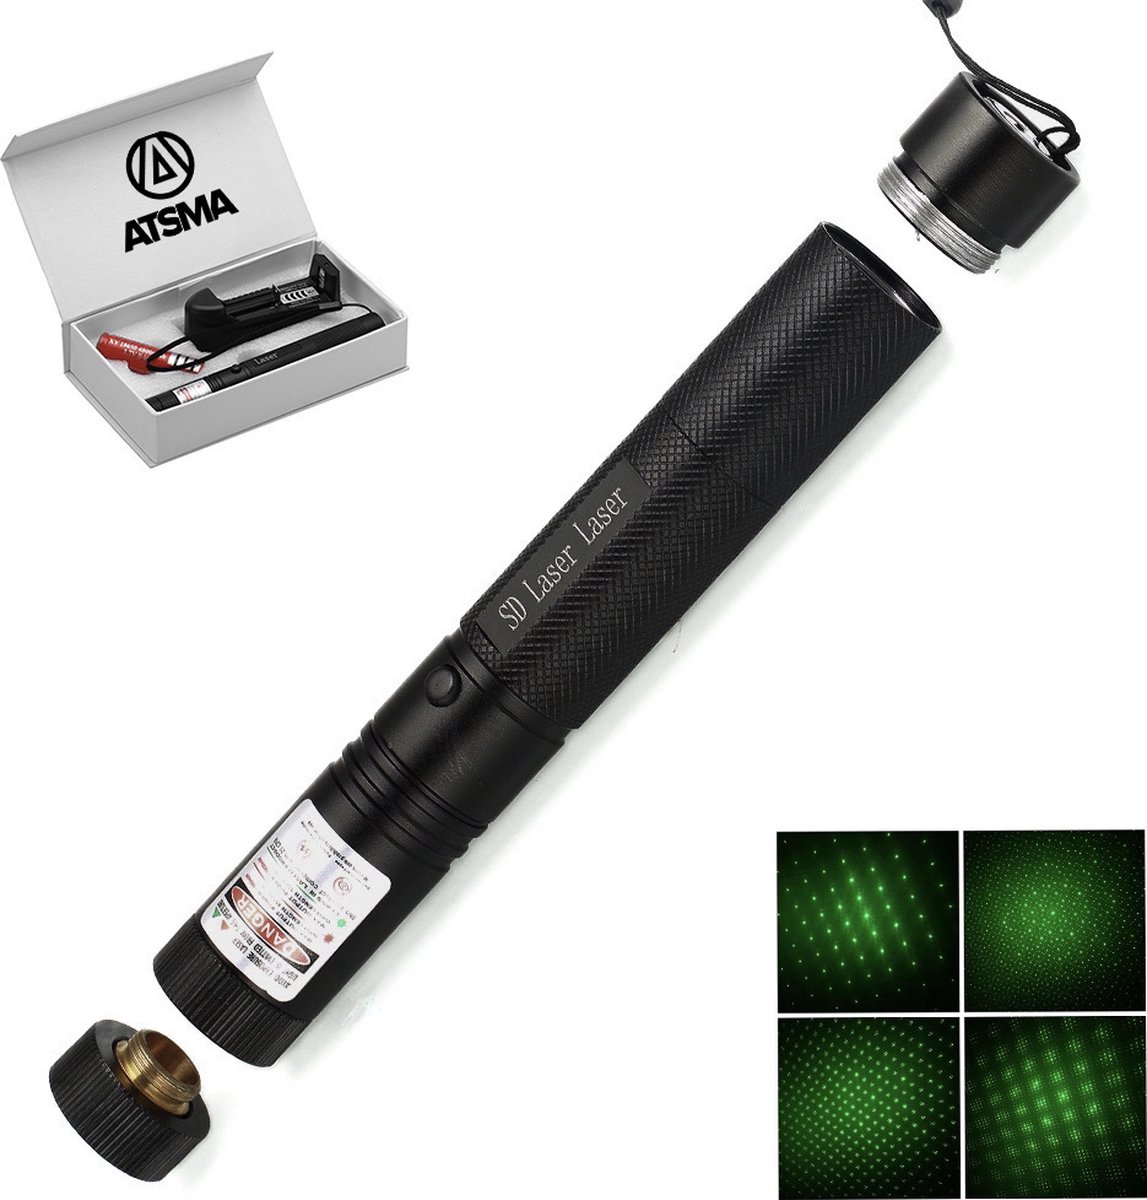 Laser 303 Torche Laser haute puissance - Avec clé de sécurité à prix pas  cher